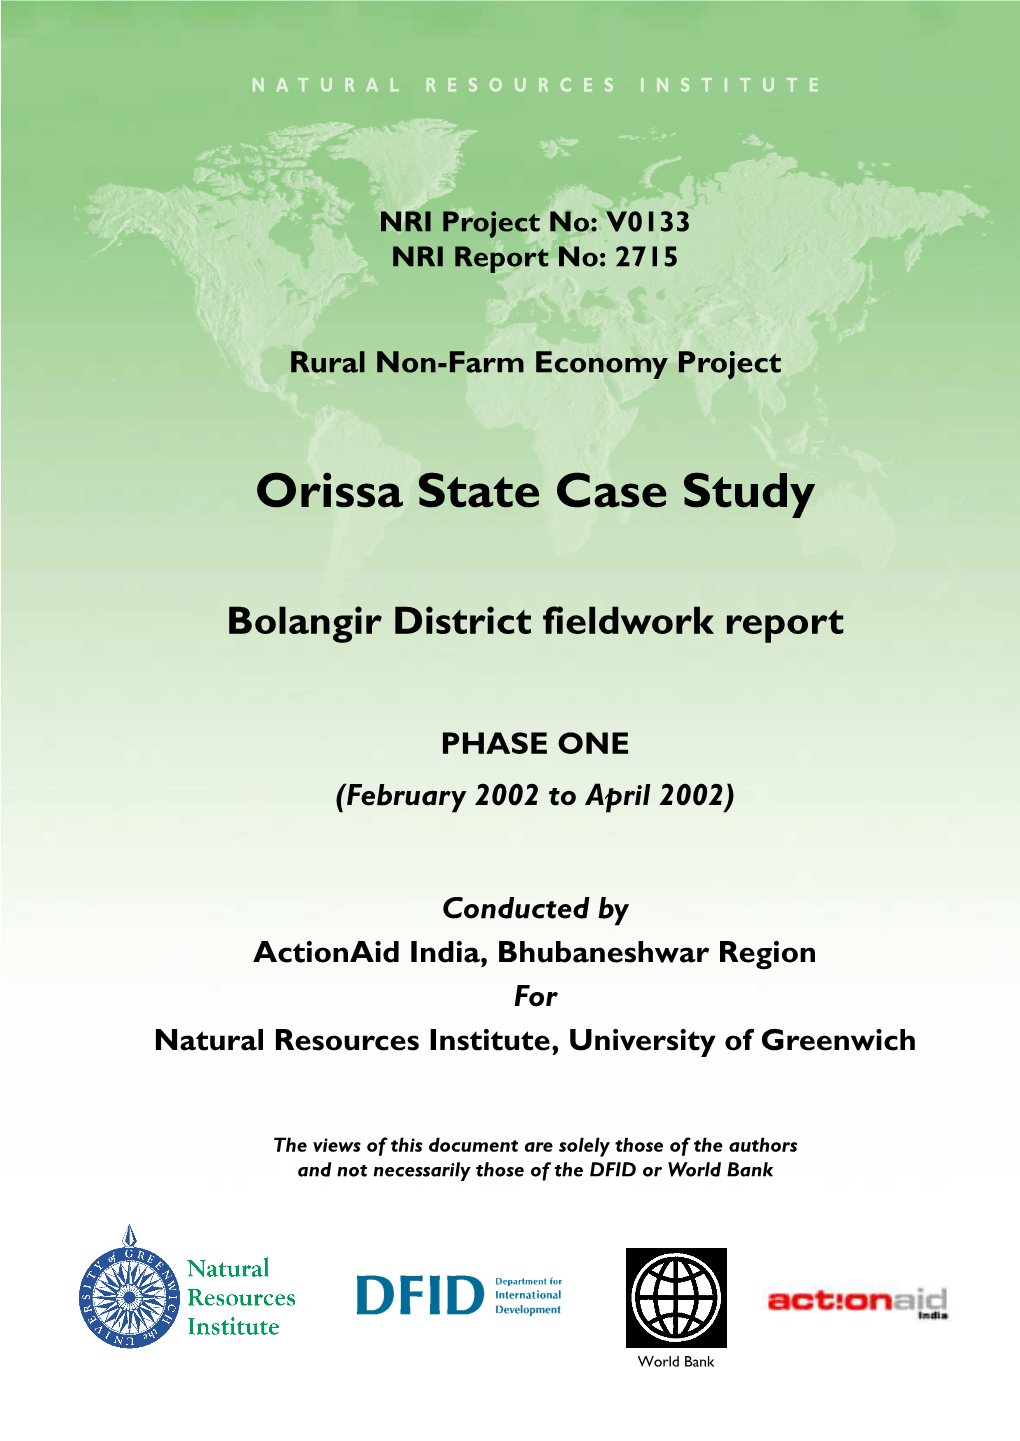 Bolangir Final Report 2715